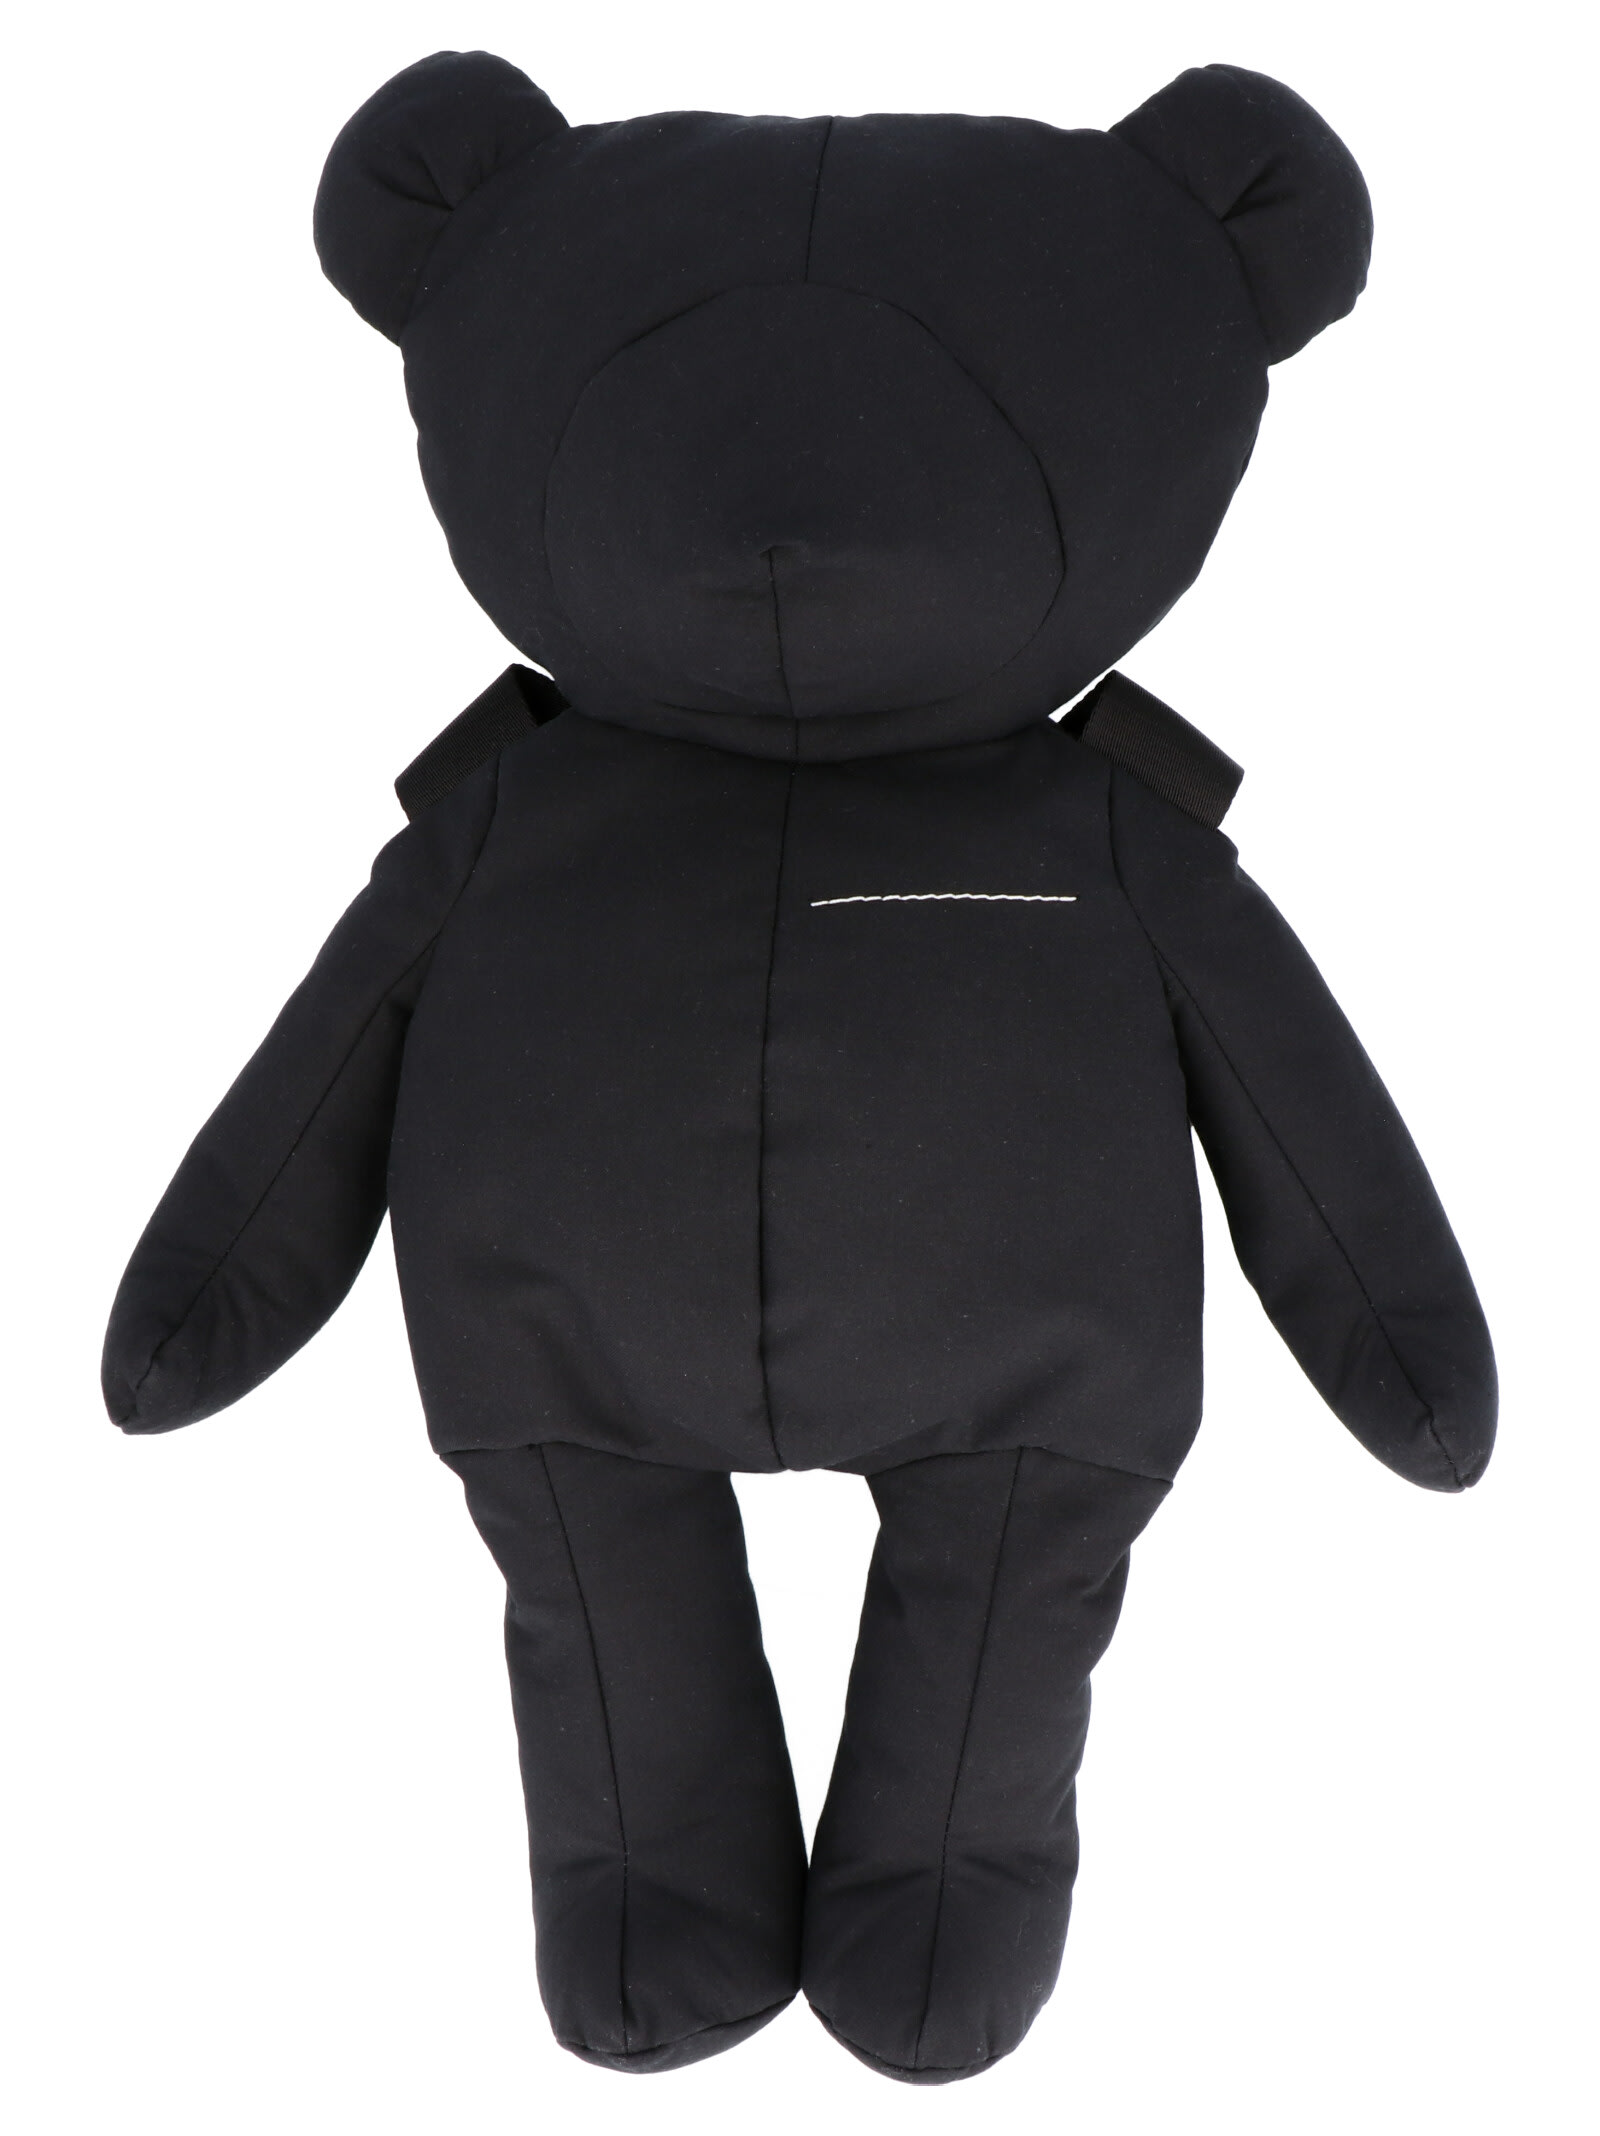 Mm6 Maison Margiela Teddy Bag In Black